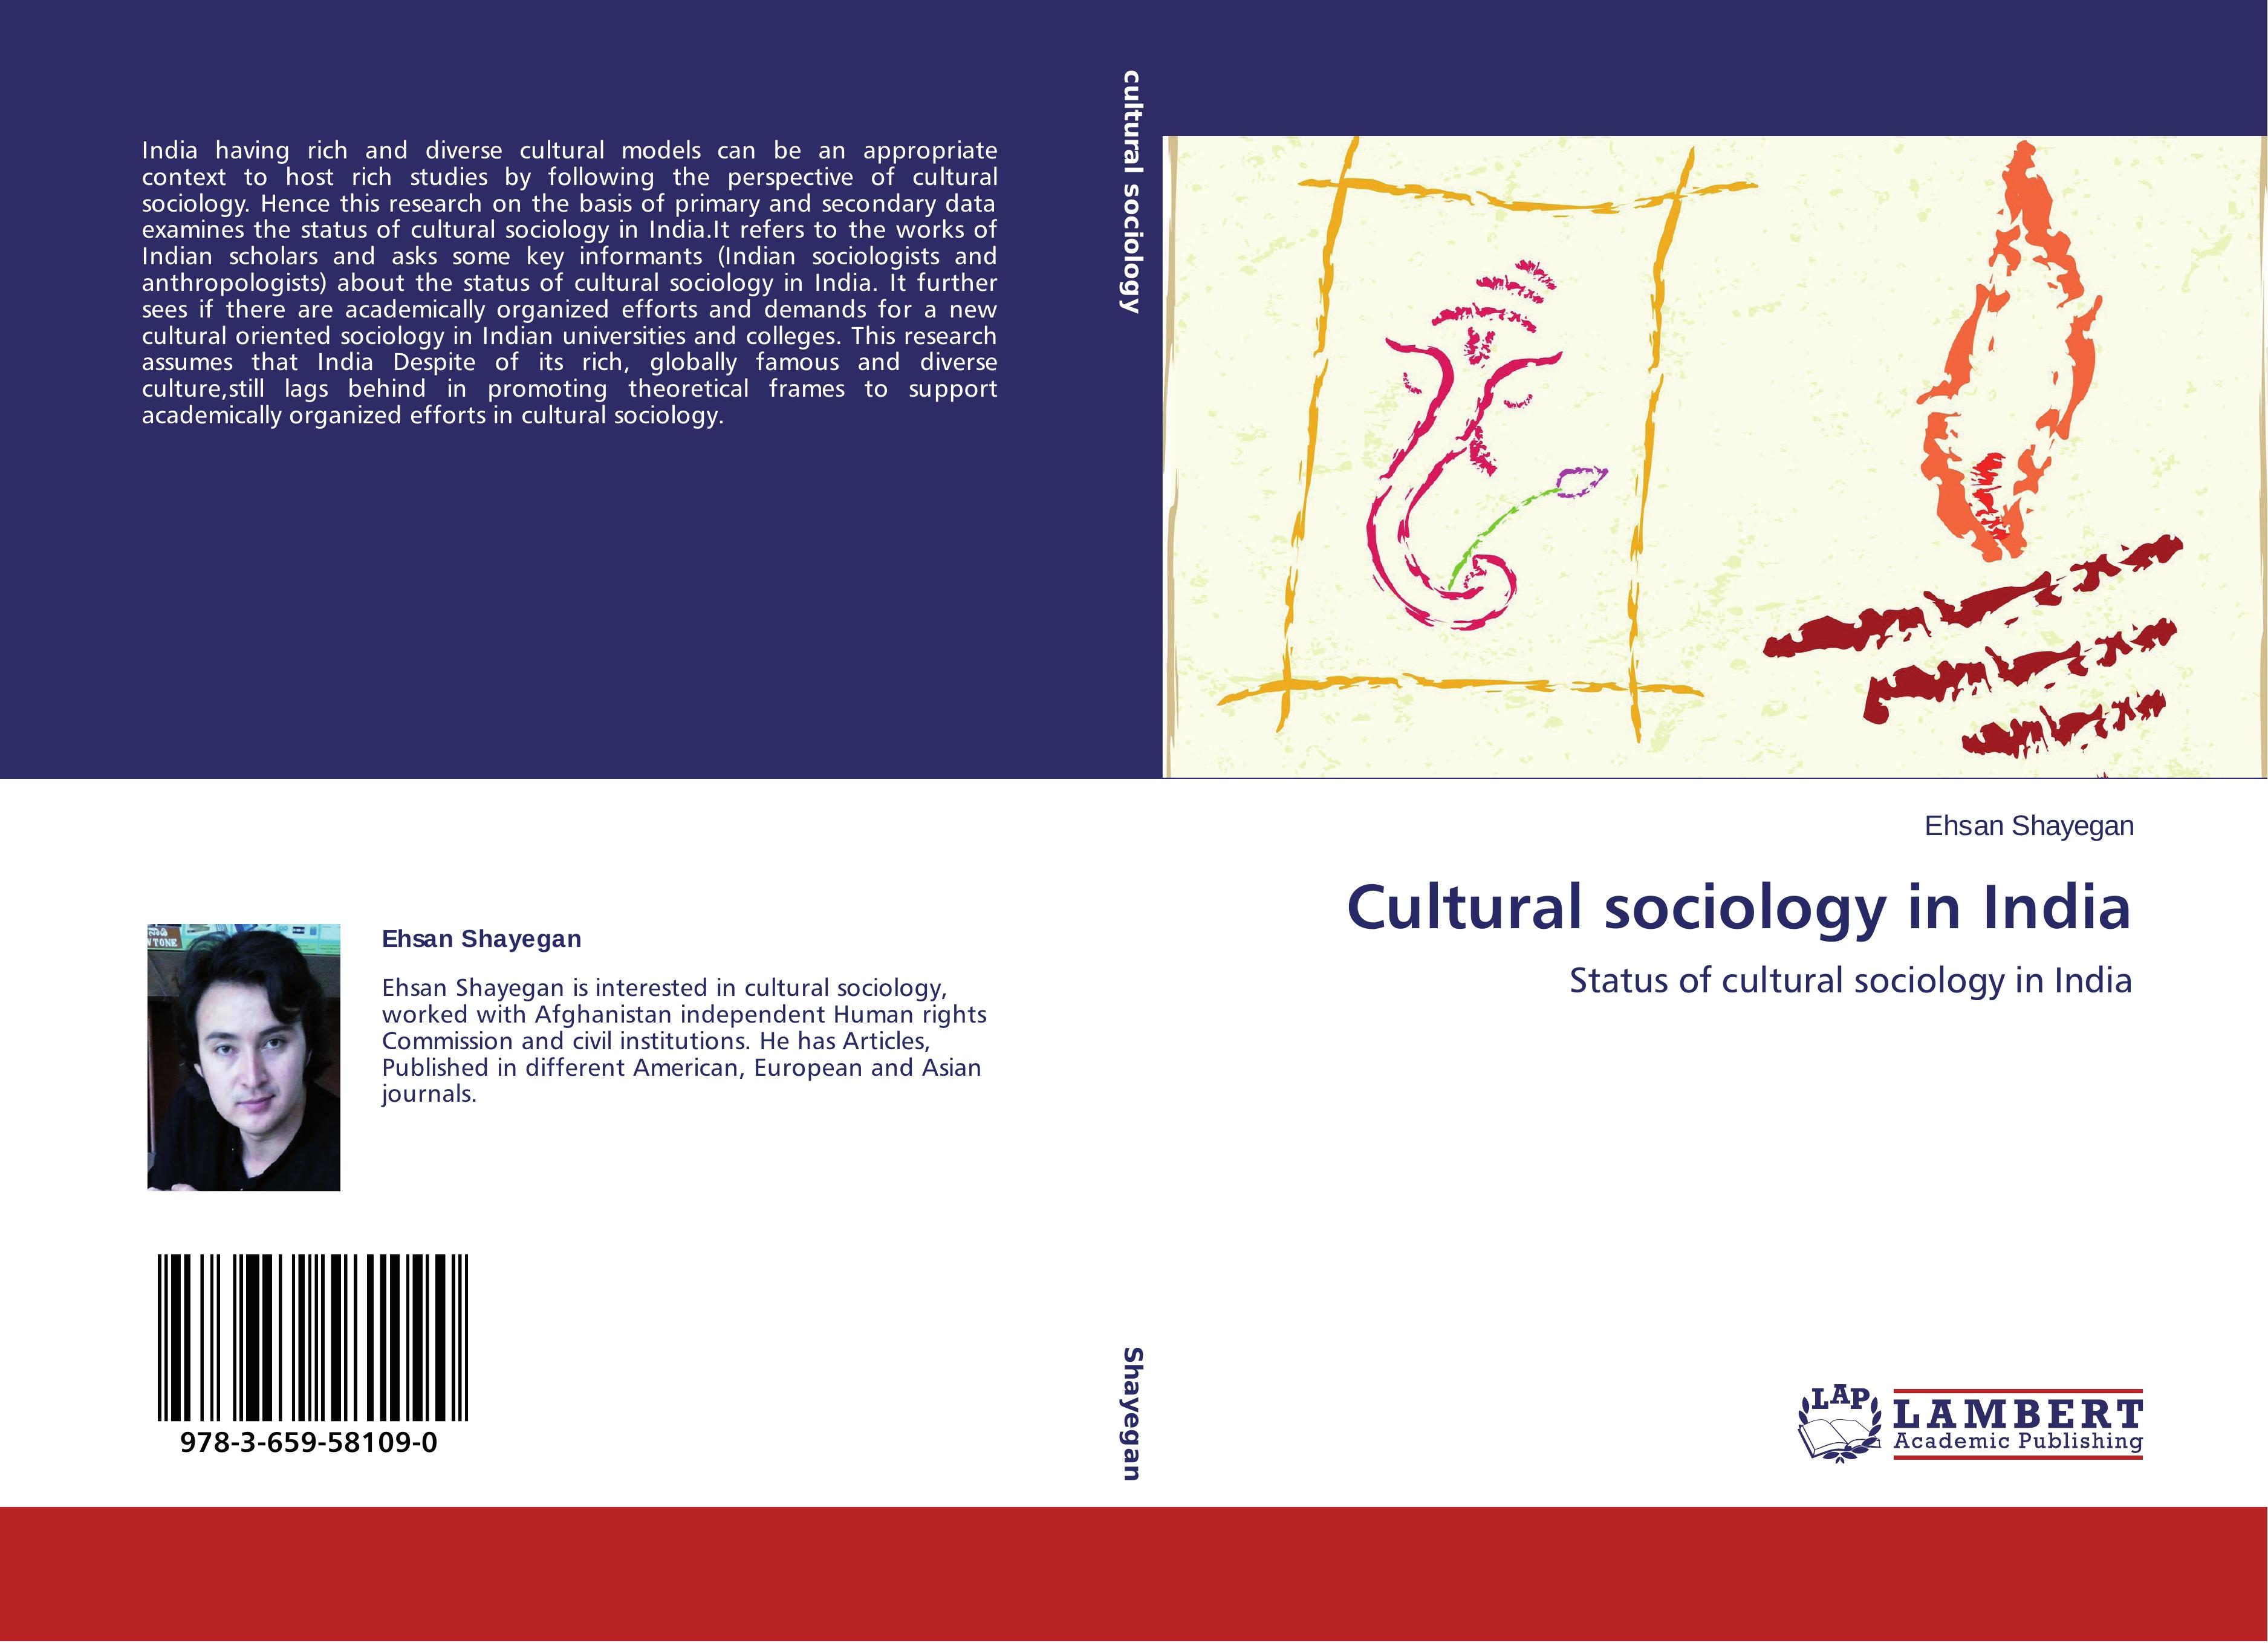 Cultural sociology in India - Ehsan Shayegan